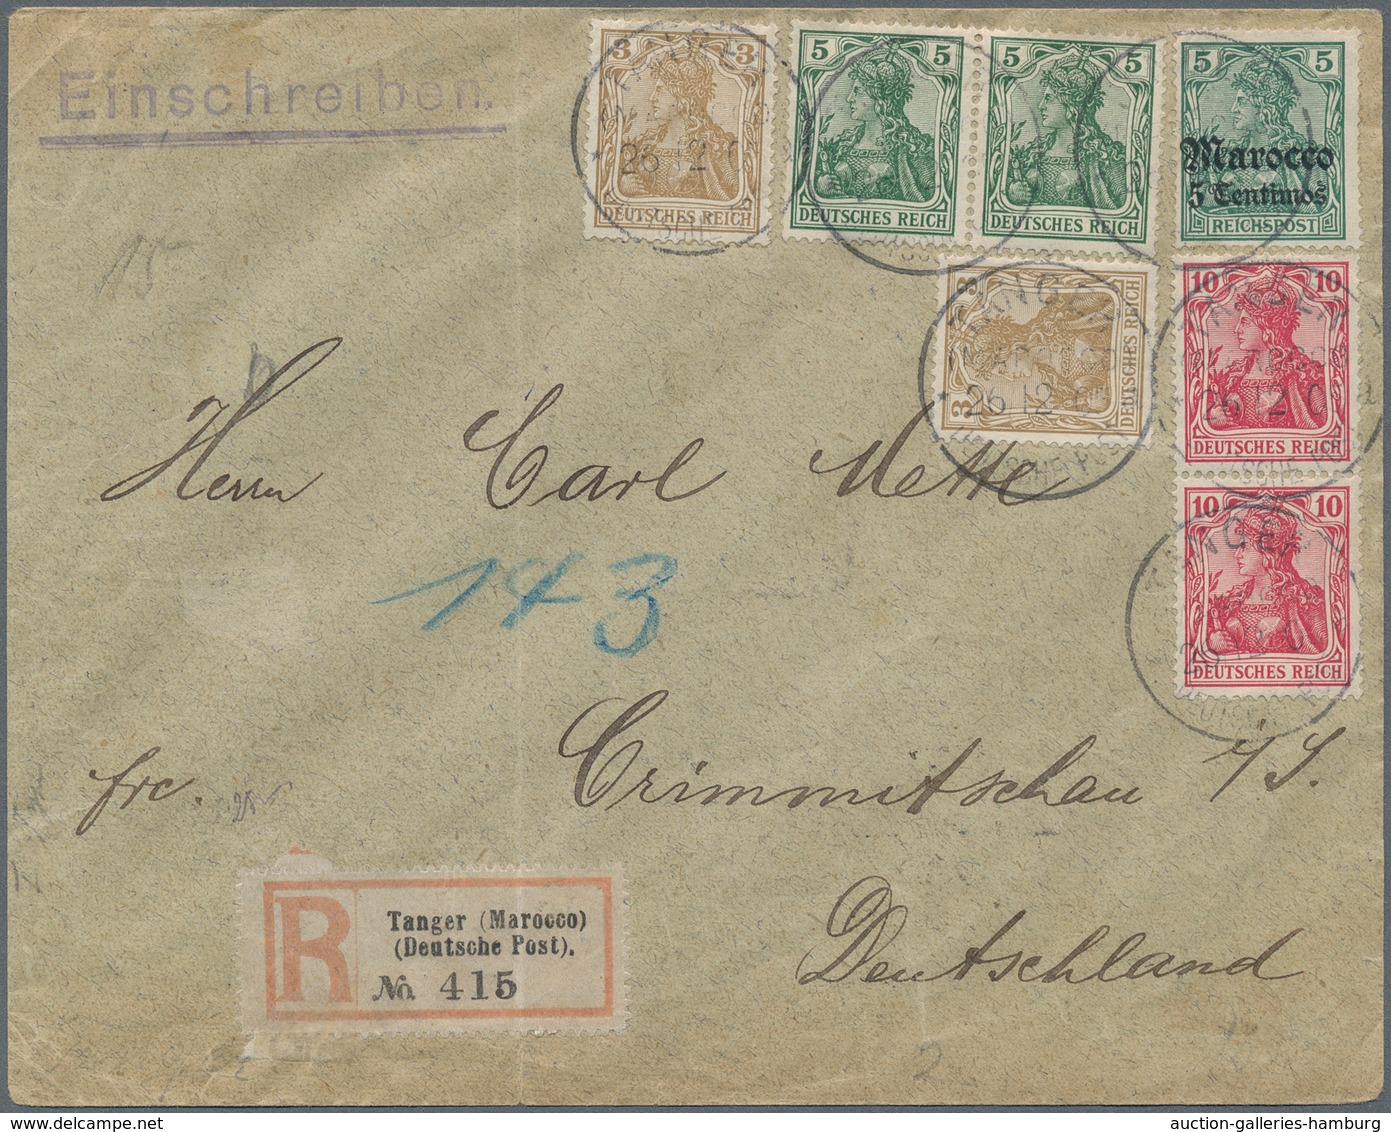 Deutsche Post In Marokko: 1905, 5 C Auf 5 (Pf) Germania Aufdruck In Frakturschrift Entwertet Mit K1 - Morocco (offices)